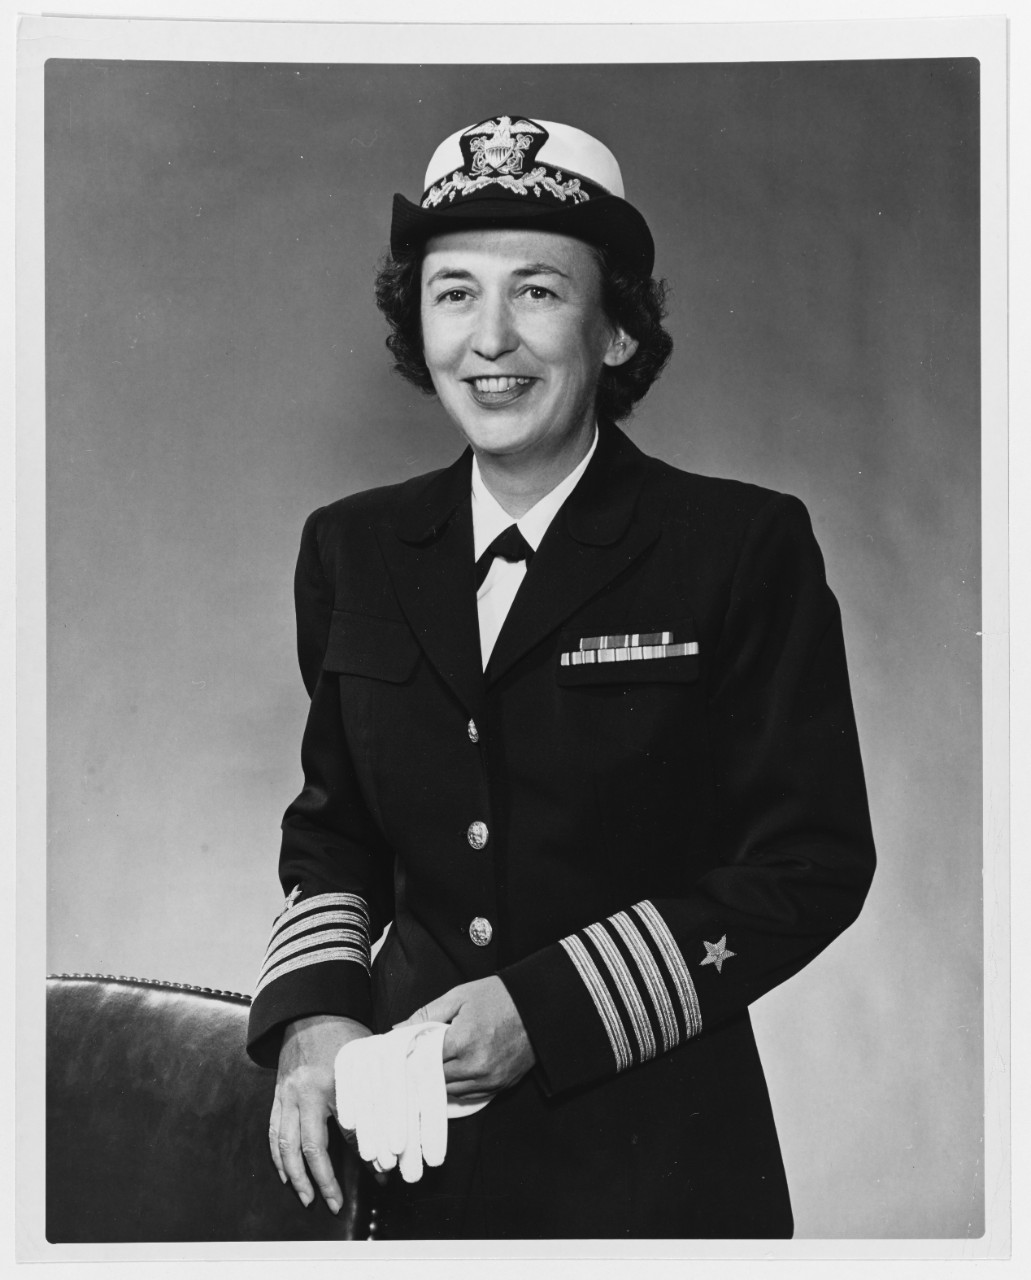 Captain Louise K. Wilde, USN